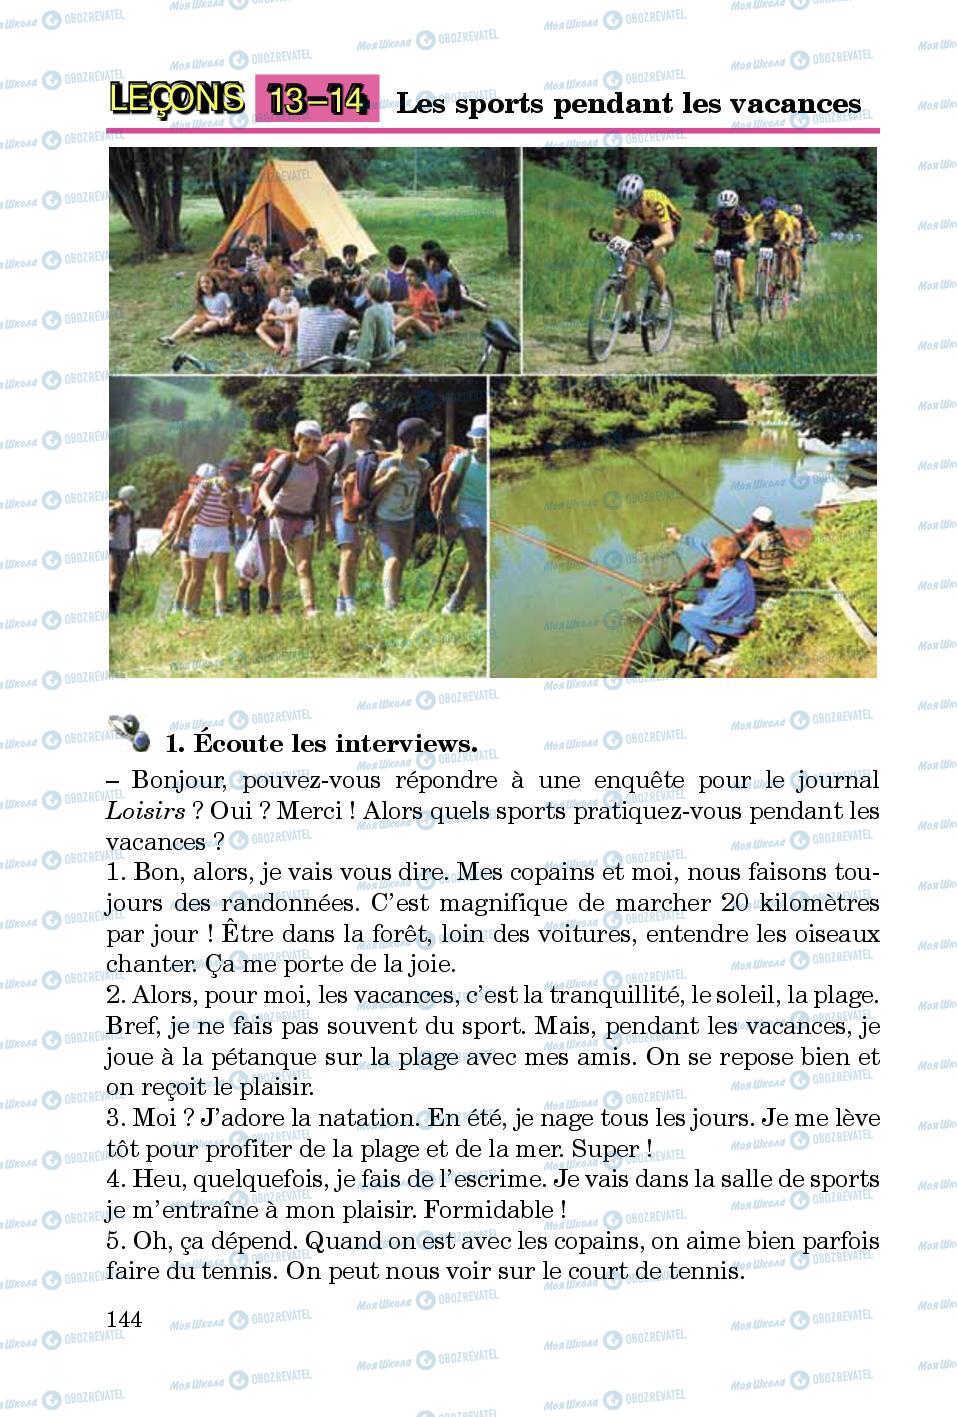 Підручники Французька мова 5 клас сторінка 144